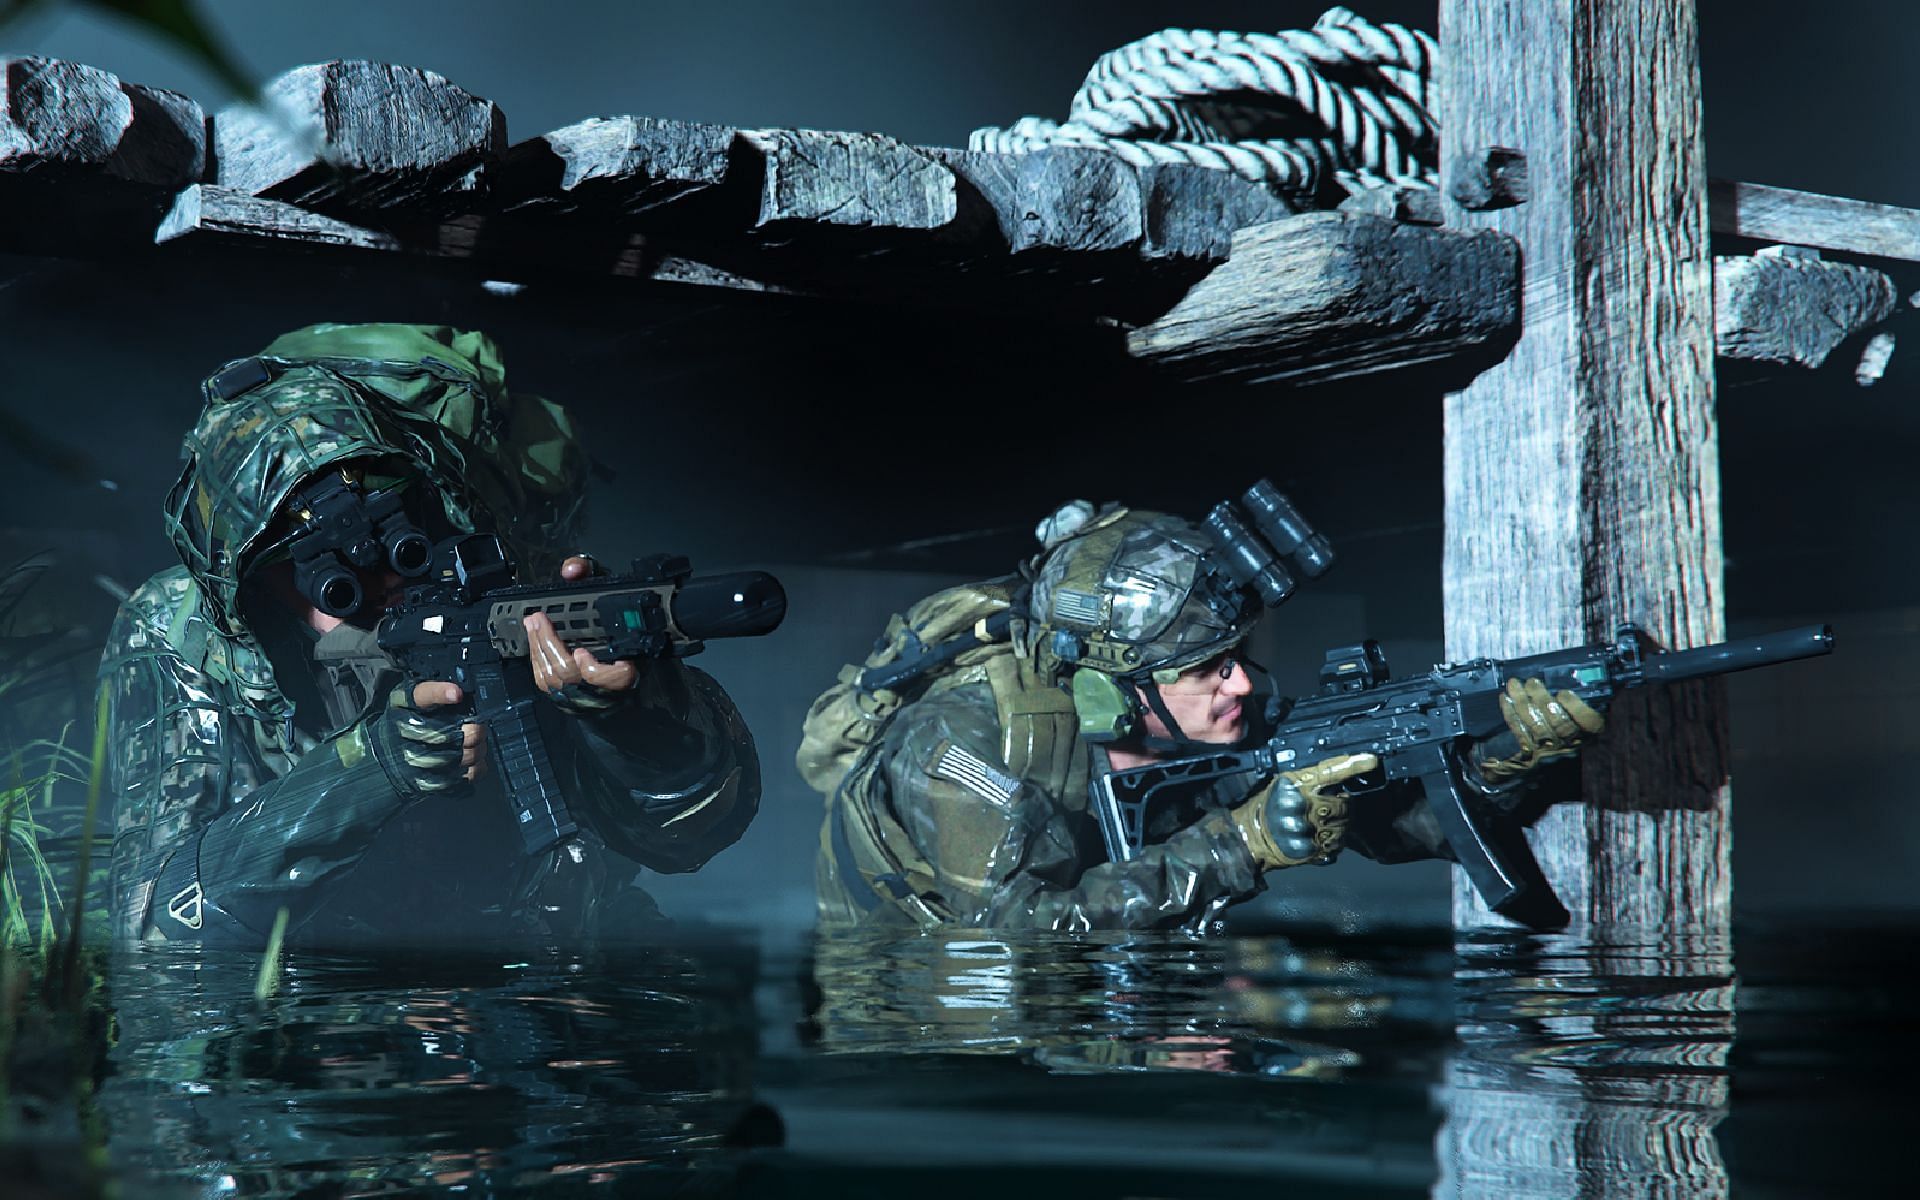 Call of Duty: Advanced Warfare Co-op Mode is Like Spec Ops Survival